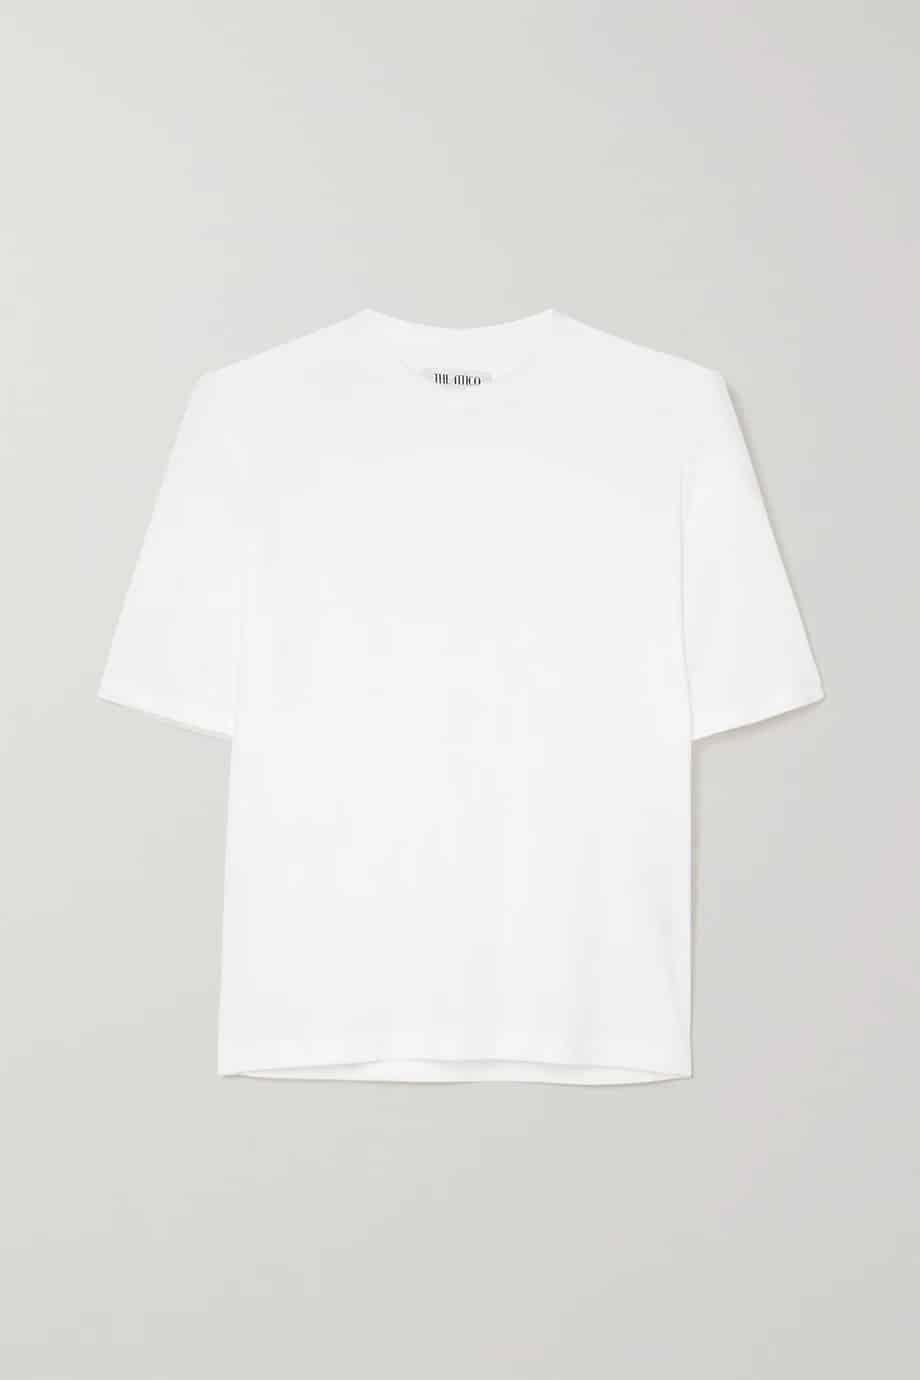 7 savršenih: The Attico bijeli T-shirt za proljeće 2021.